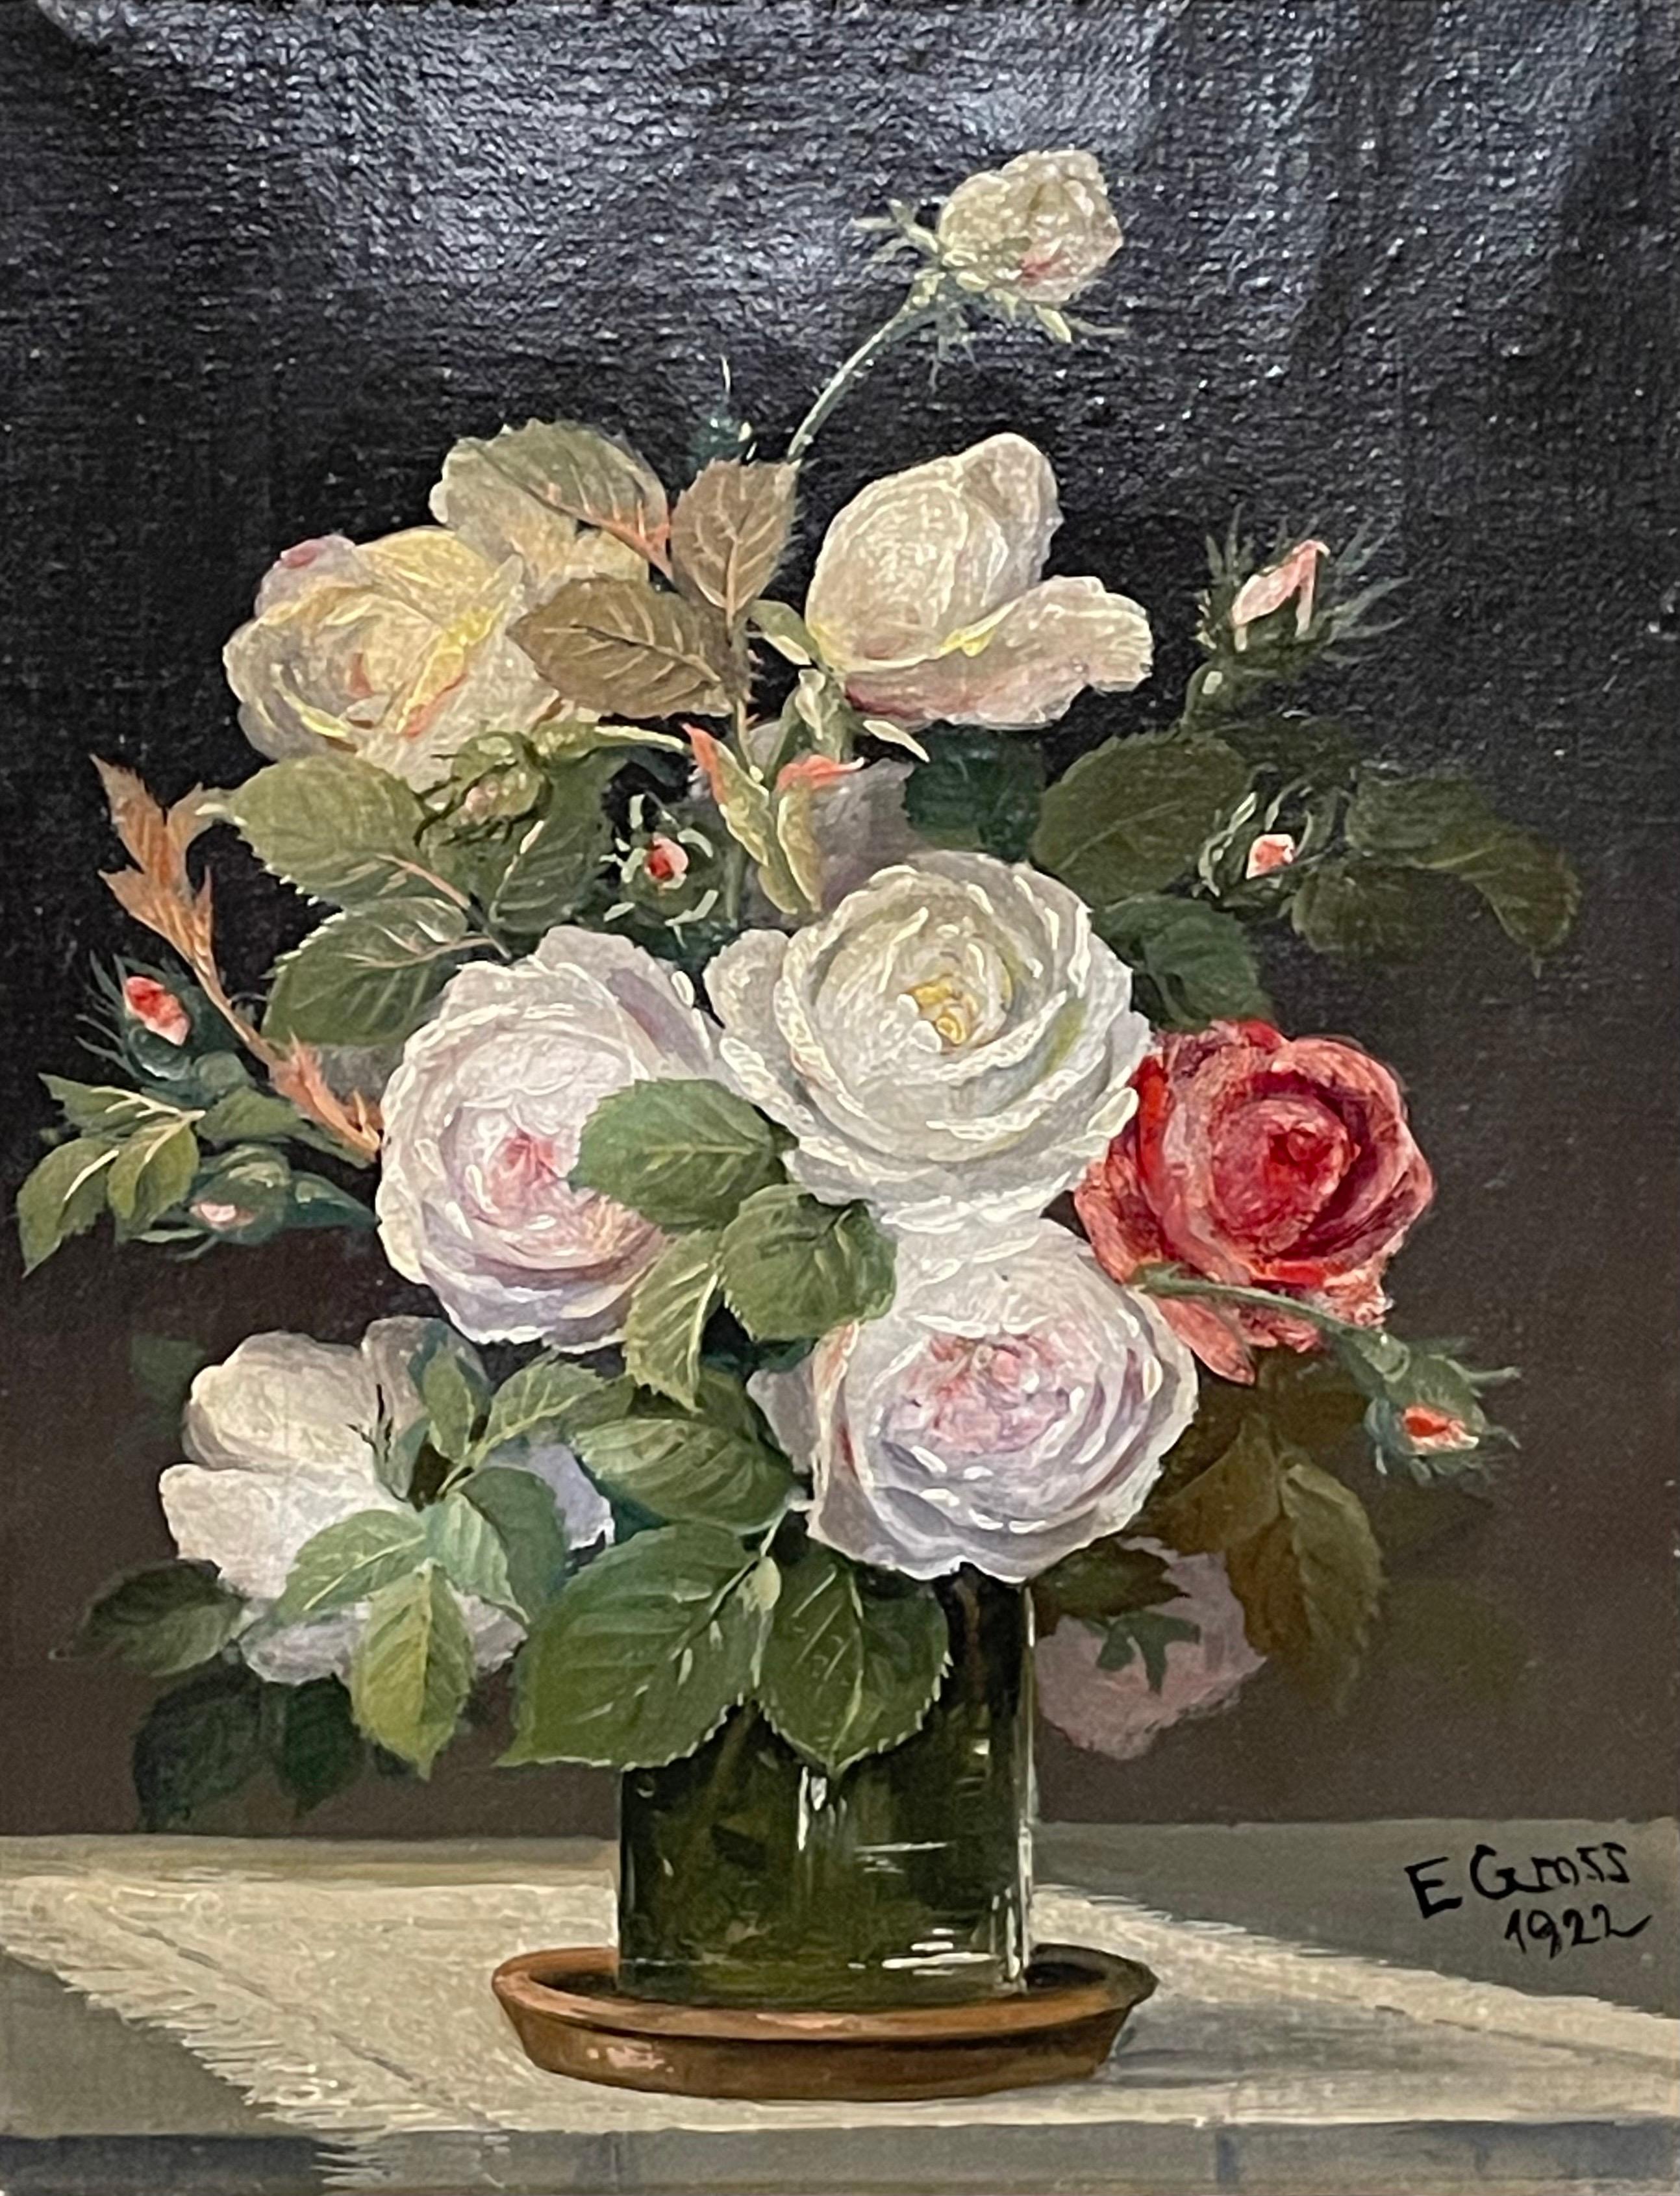 Il s'agit d'une peinture originale danoise à l'huile sur toile d'une nature morte de fleurs datant de 1922 et réalisée par E. Gross.

Elle est signée par l'artiste dans le coin inférieur droit et est encadrée dans un magnifique cadre en bois massif